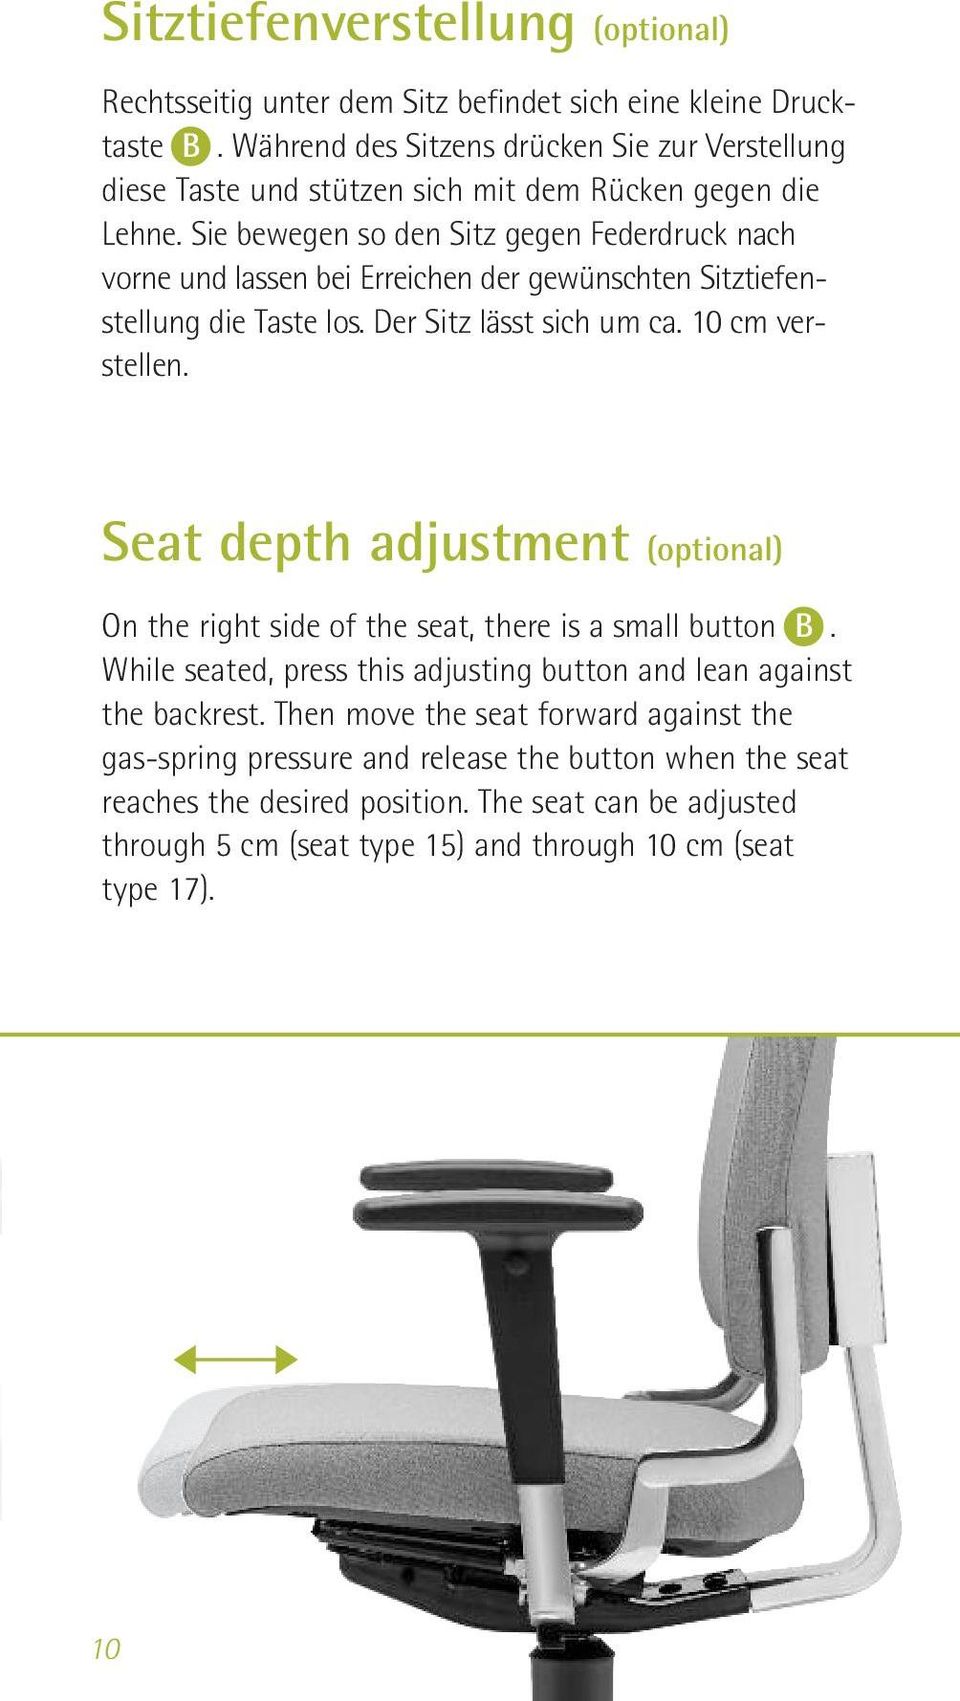 Sie bewegen so den Sitz gegen Feder druck nach vorne und lassen bei Erreichen der gewün schten Sitz tie fen - stellung die Taste los. Der Sitz lässt sich um ca. 10 cm verstellen.